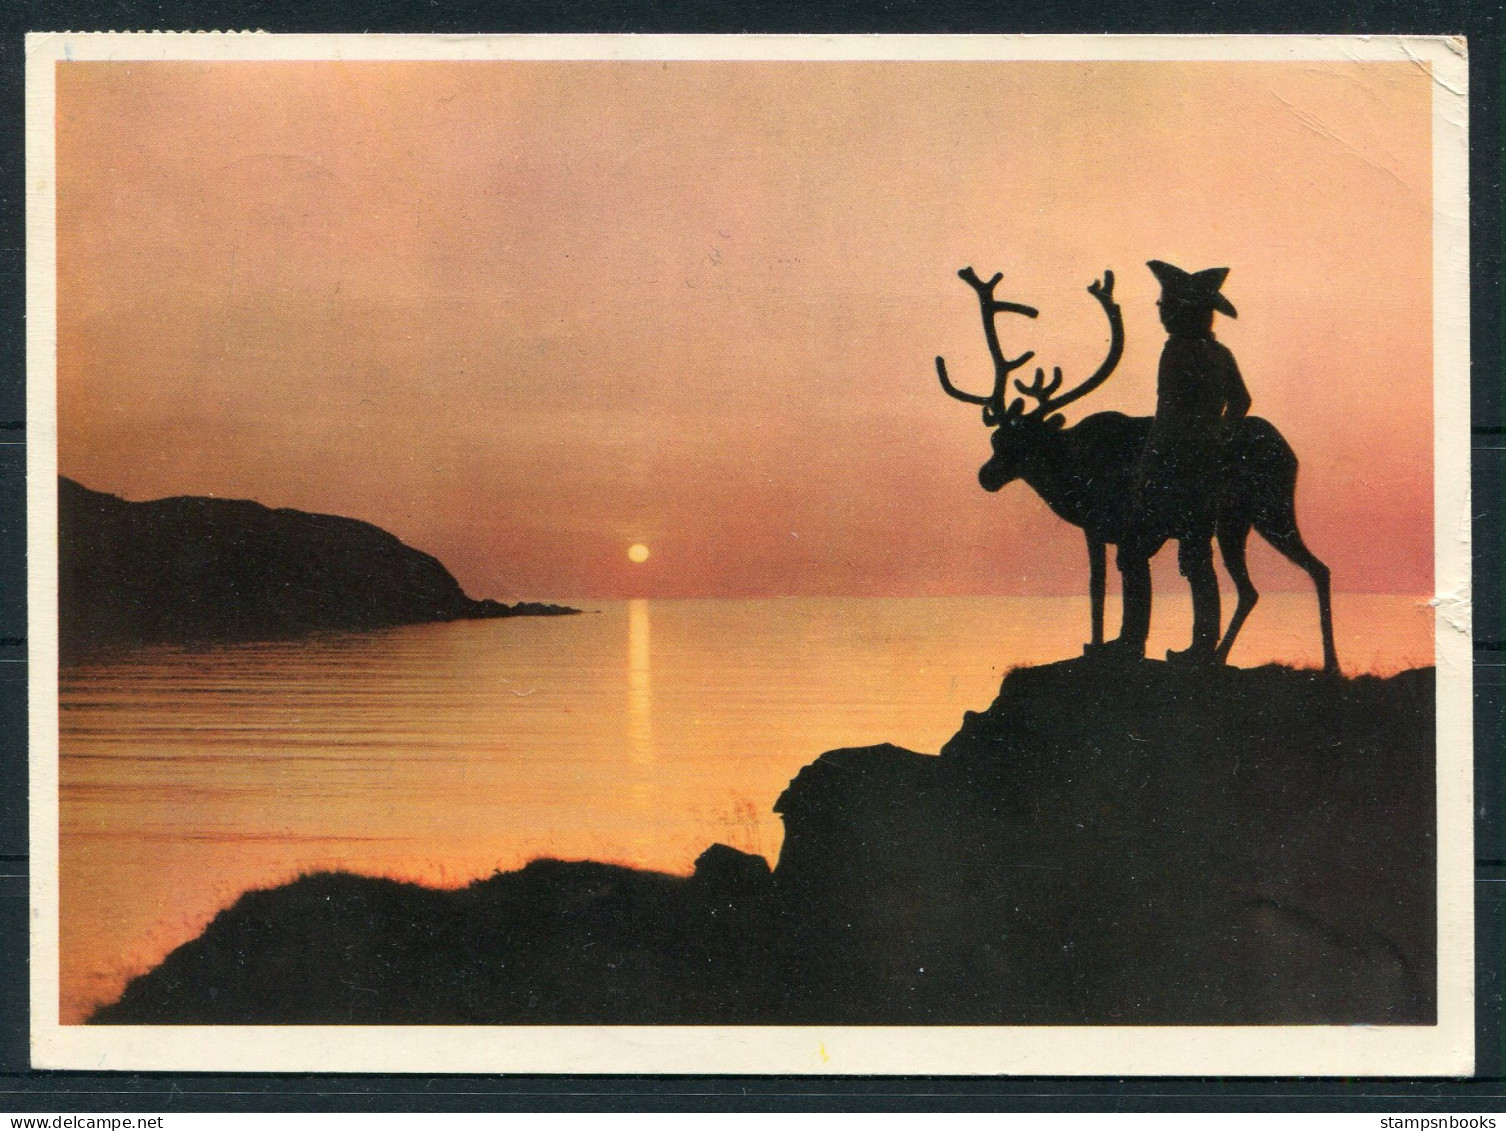 1960 Norway Arctic Circle, Polarsirkelen Postcard - Holland. Nordkap 35ore + Svalbard Jan Mayen I.G.Y. Polar Franking - Lettres & Documents